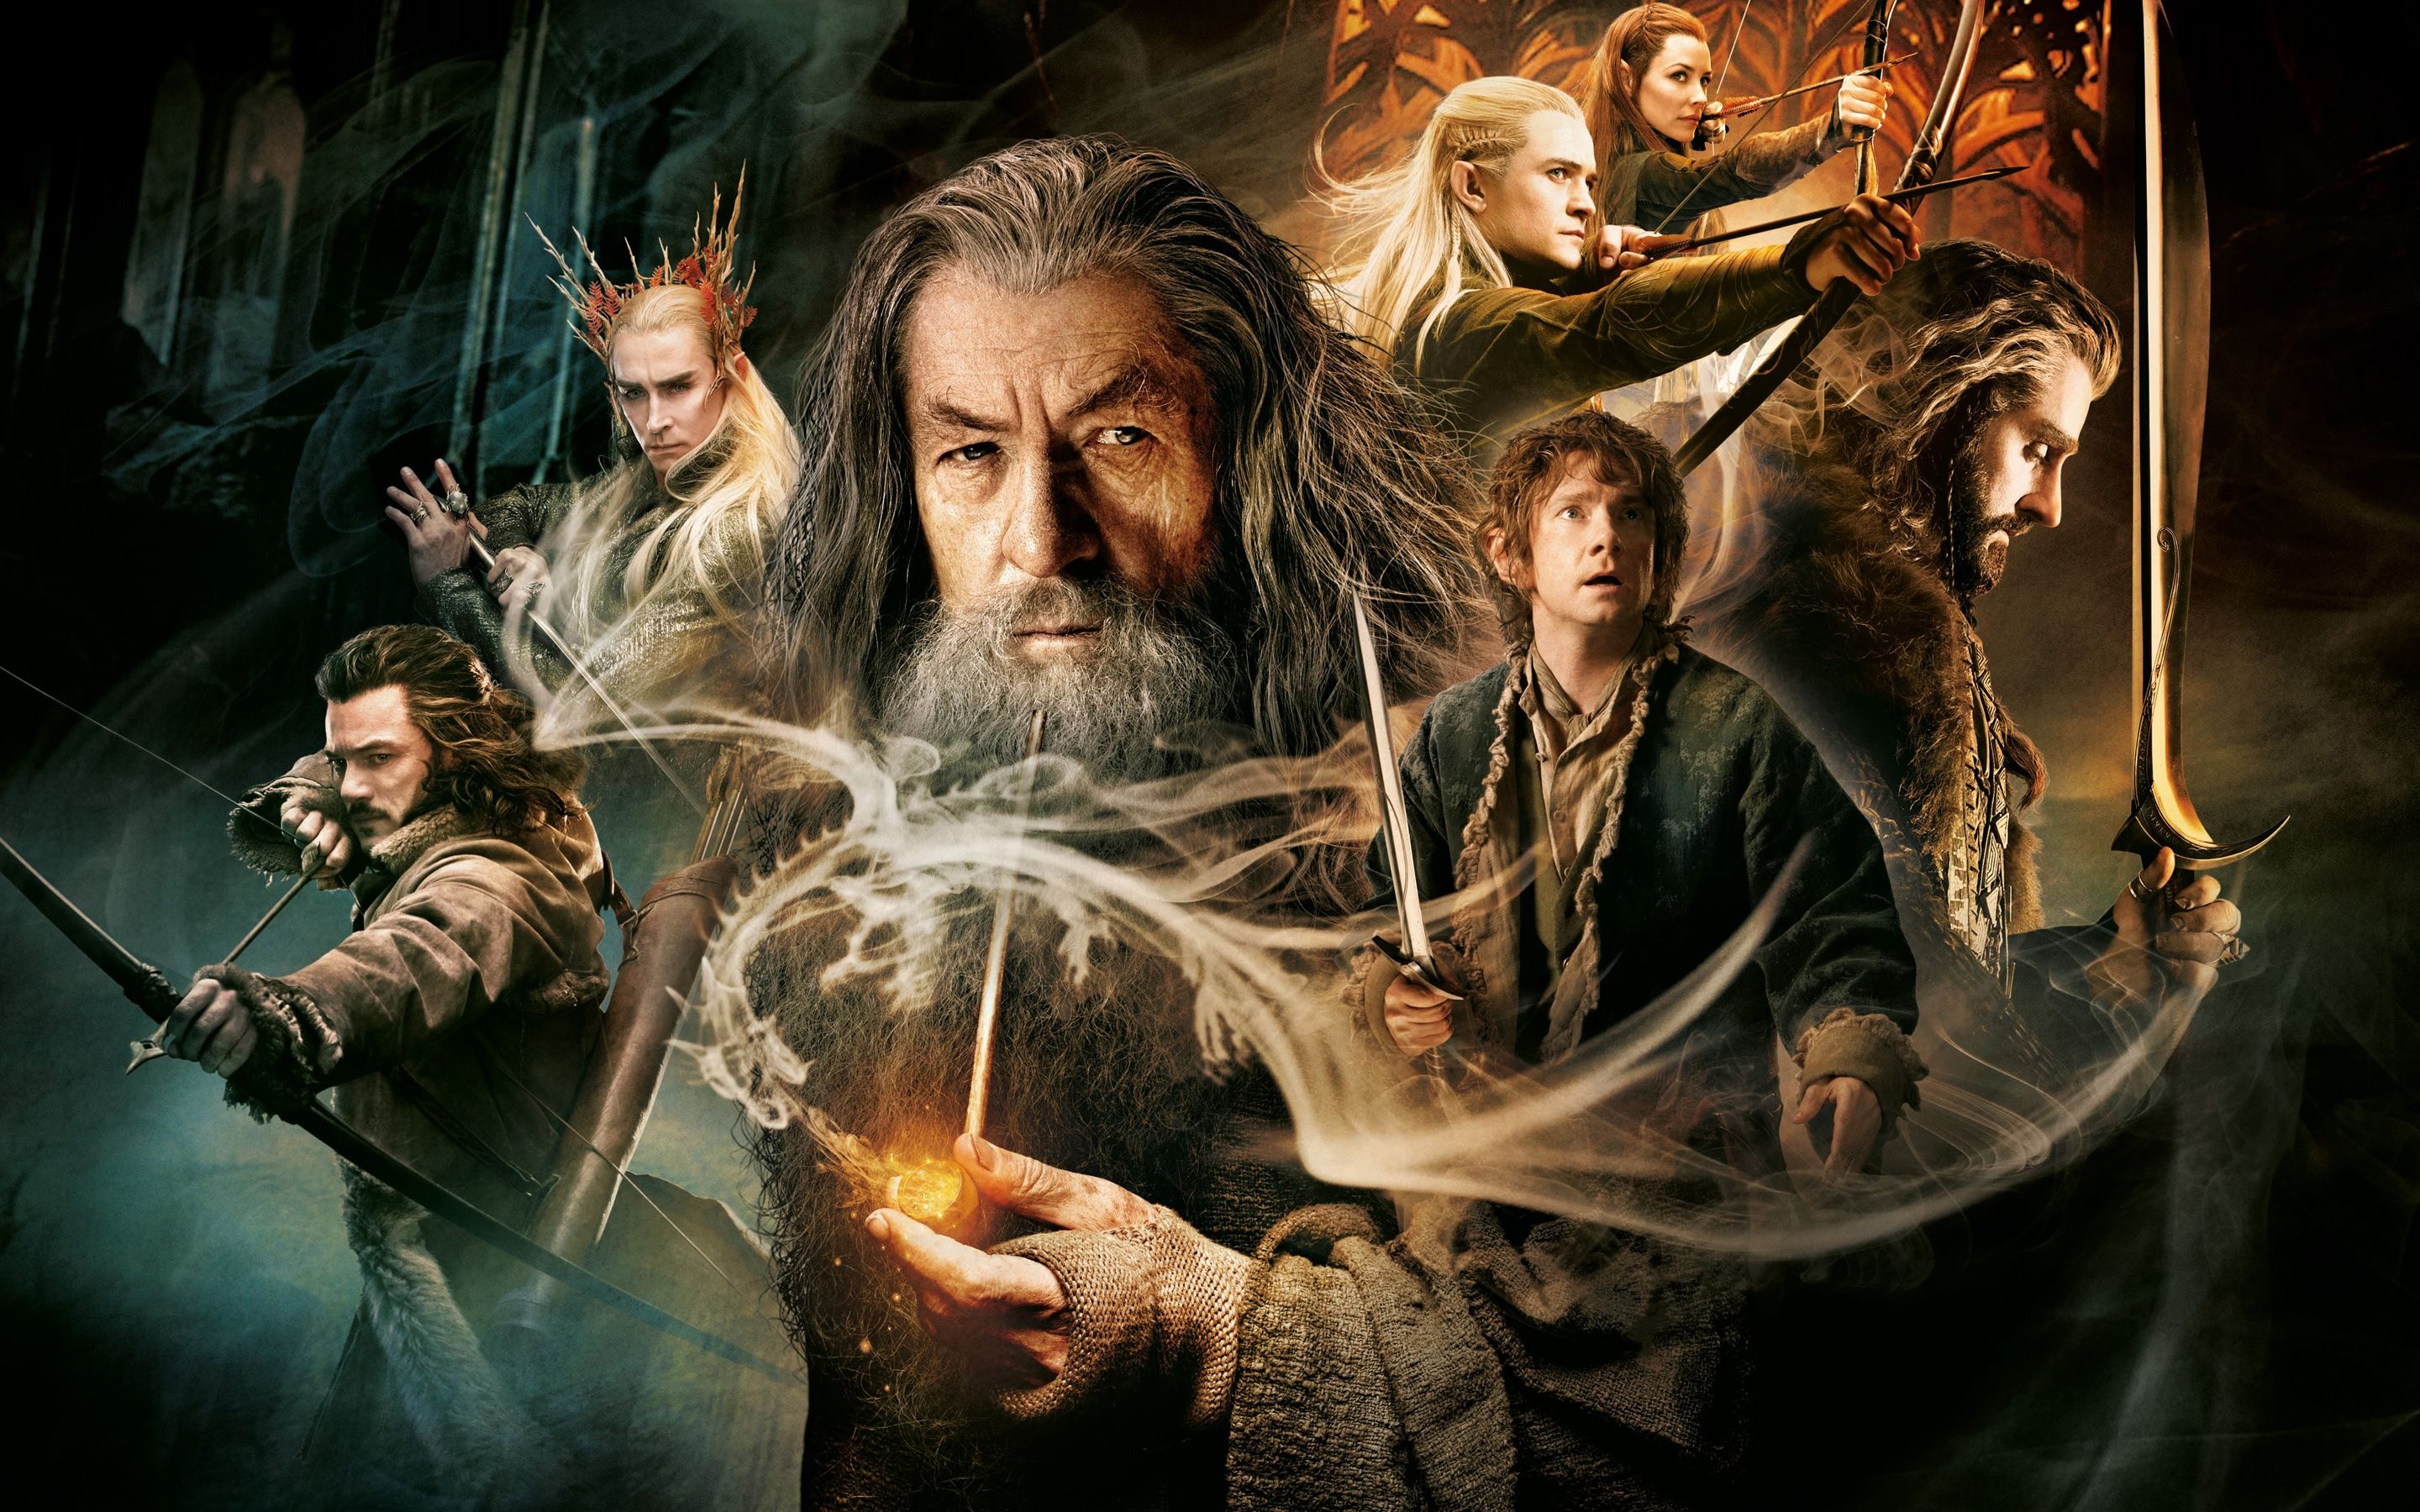 An Unexpected Journey, Hobbits wallpaper, Middle-earth beauty, LotR fan art, 2880x1800 HD Desktop